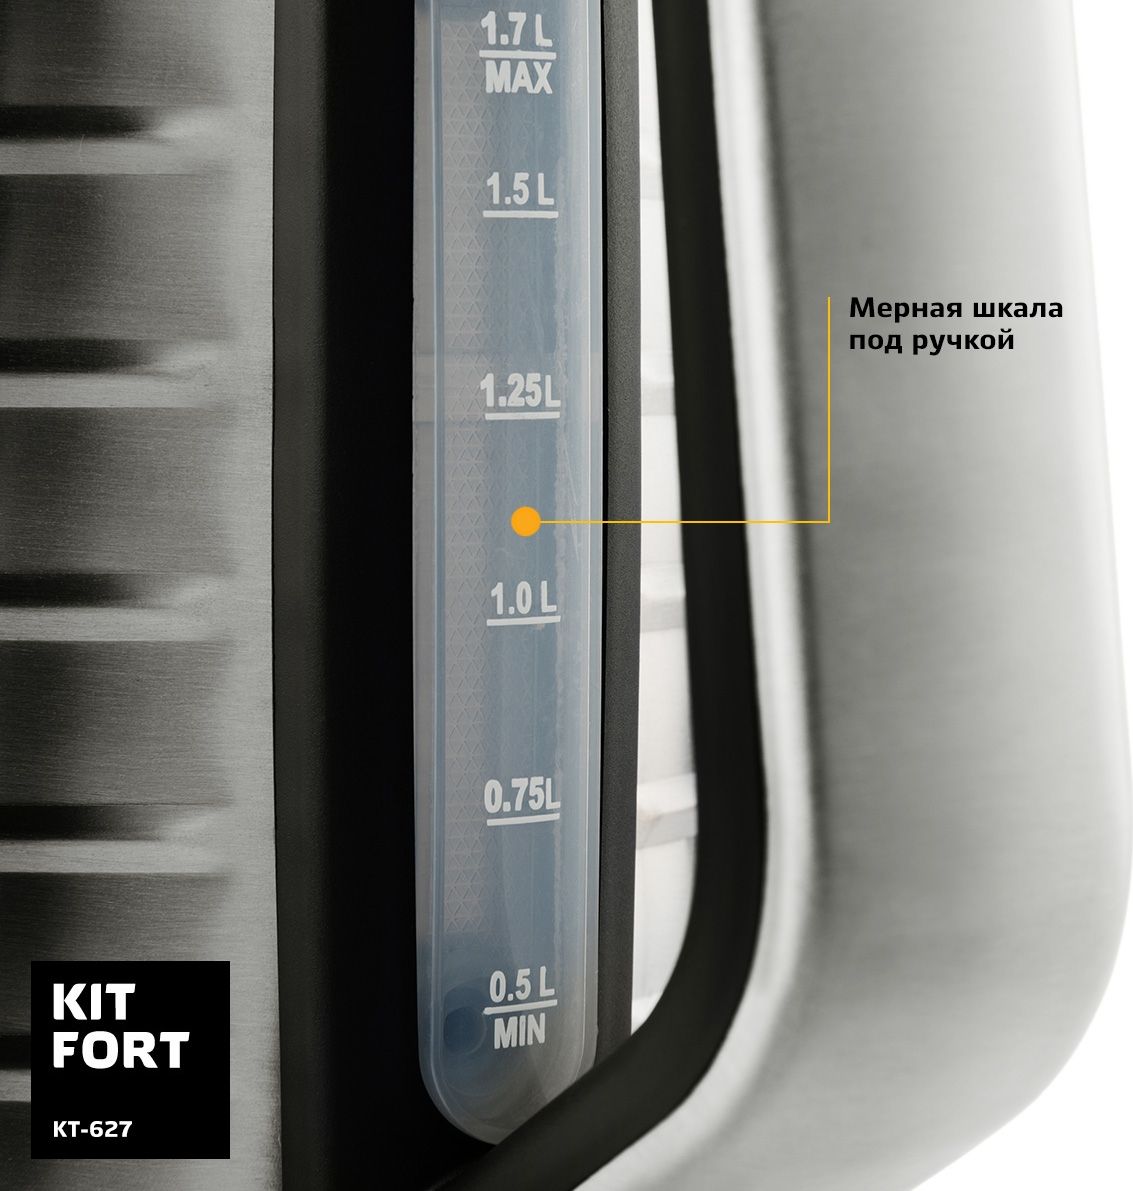   Kitfort -627, Grey Metallic